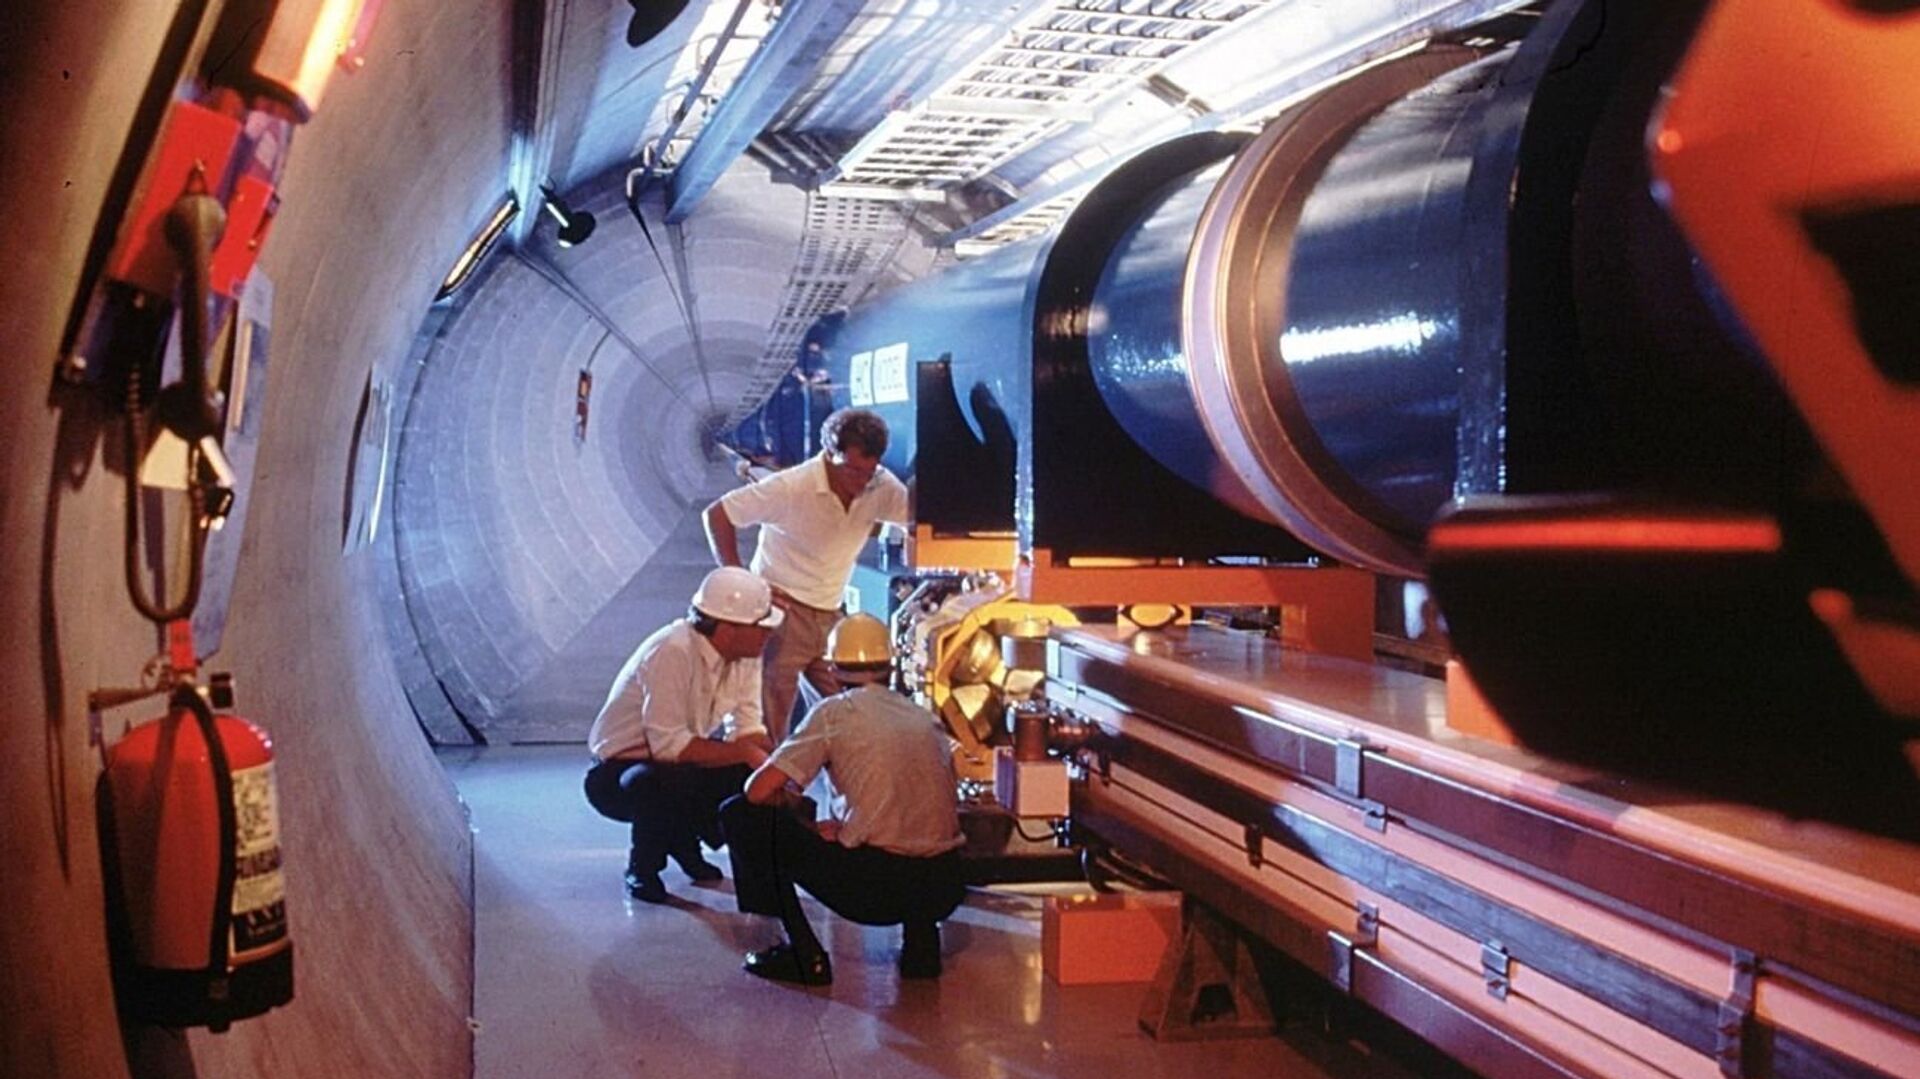 Највећа и најважнија истраживања ЦЕРН-а обављају се у Великом хадронском сударачу, подземном тунелу дугачком 27 километара на граници Швајцарске и Француске - Sputnik Србија, 1920, 02.01.2022